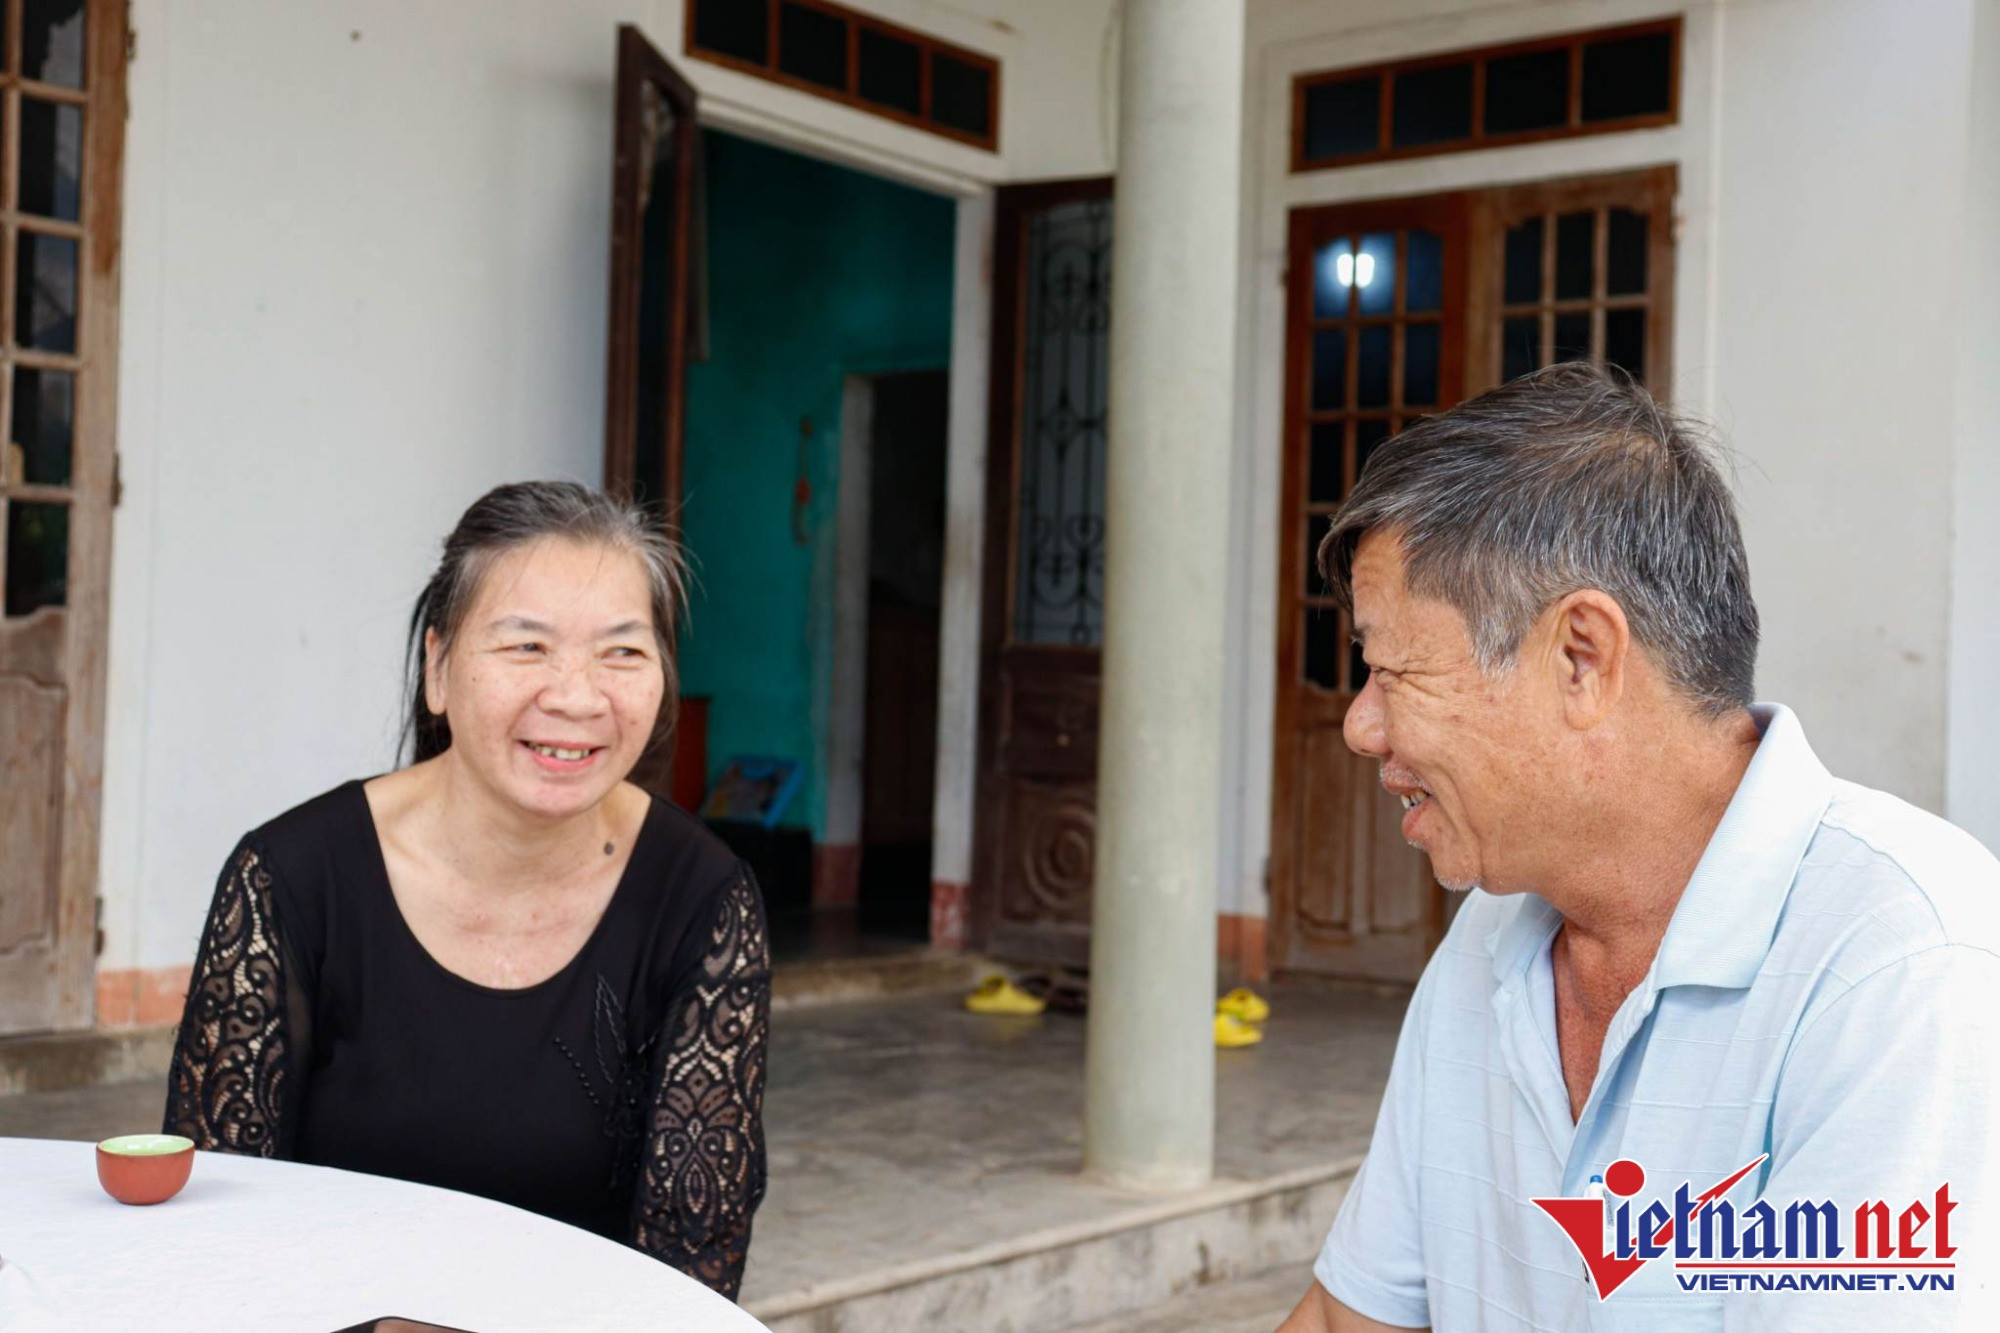 Nước mắt ngày trở về của người phụ nữ 20 năm lưu lạc ở Trung Quốc